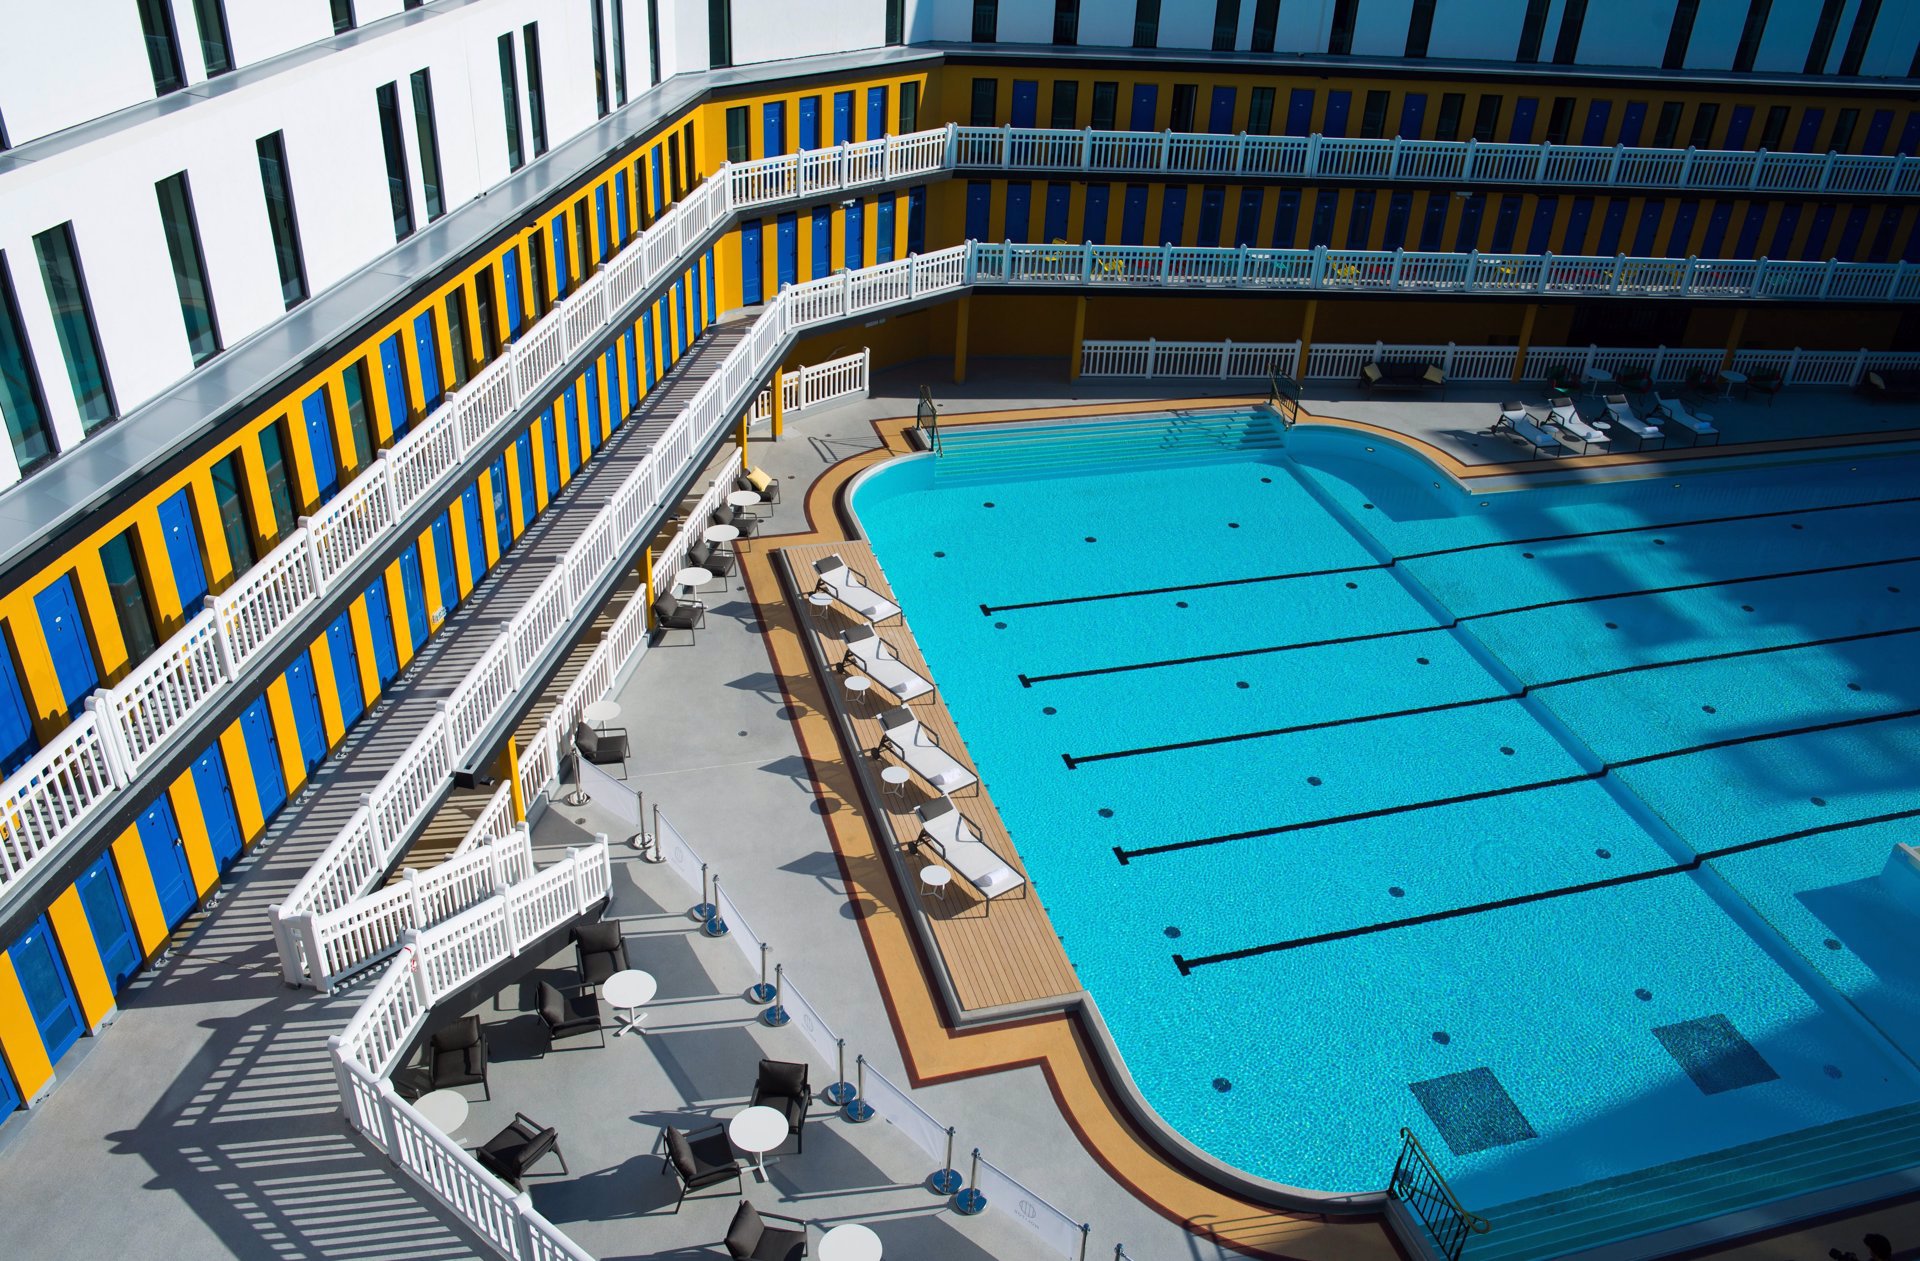 La nueva piscina del Hotel Molitor, vista superior